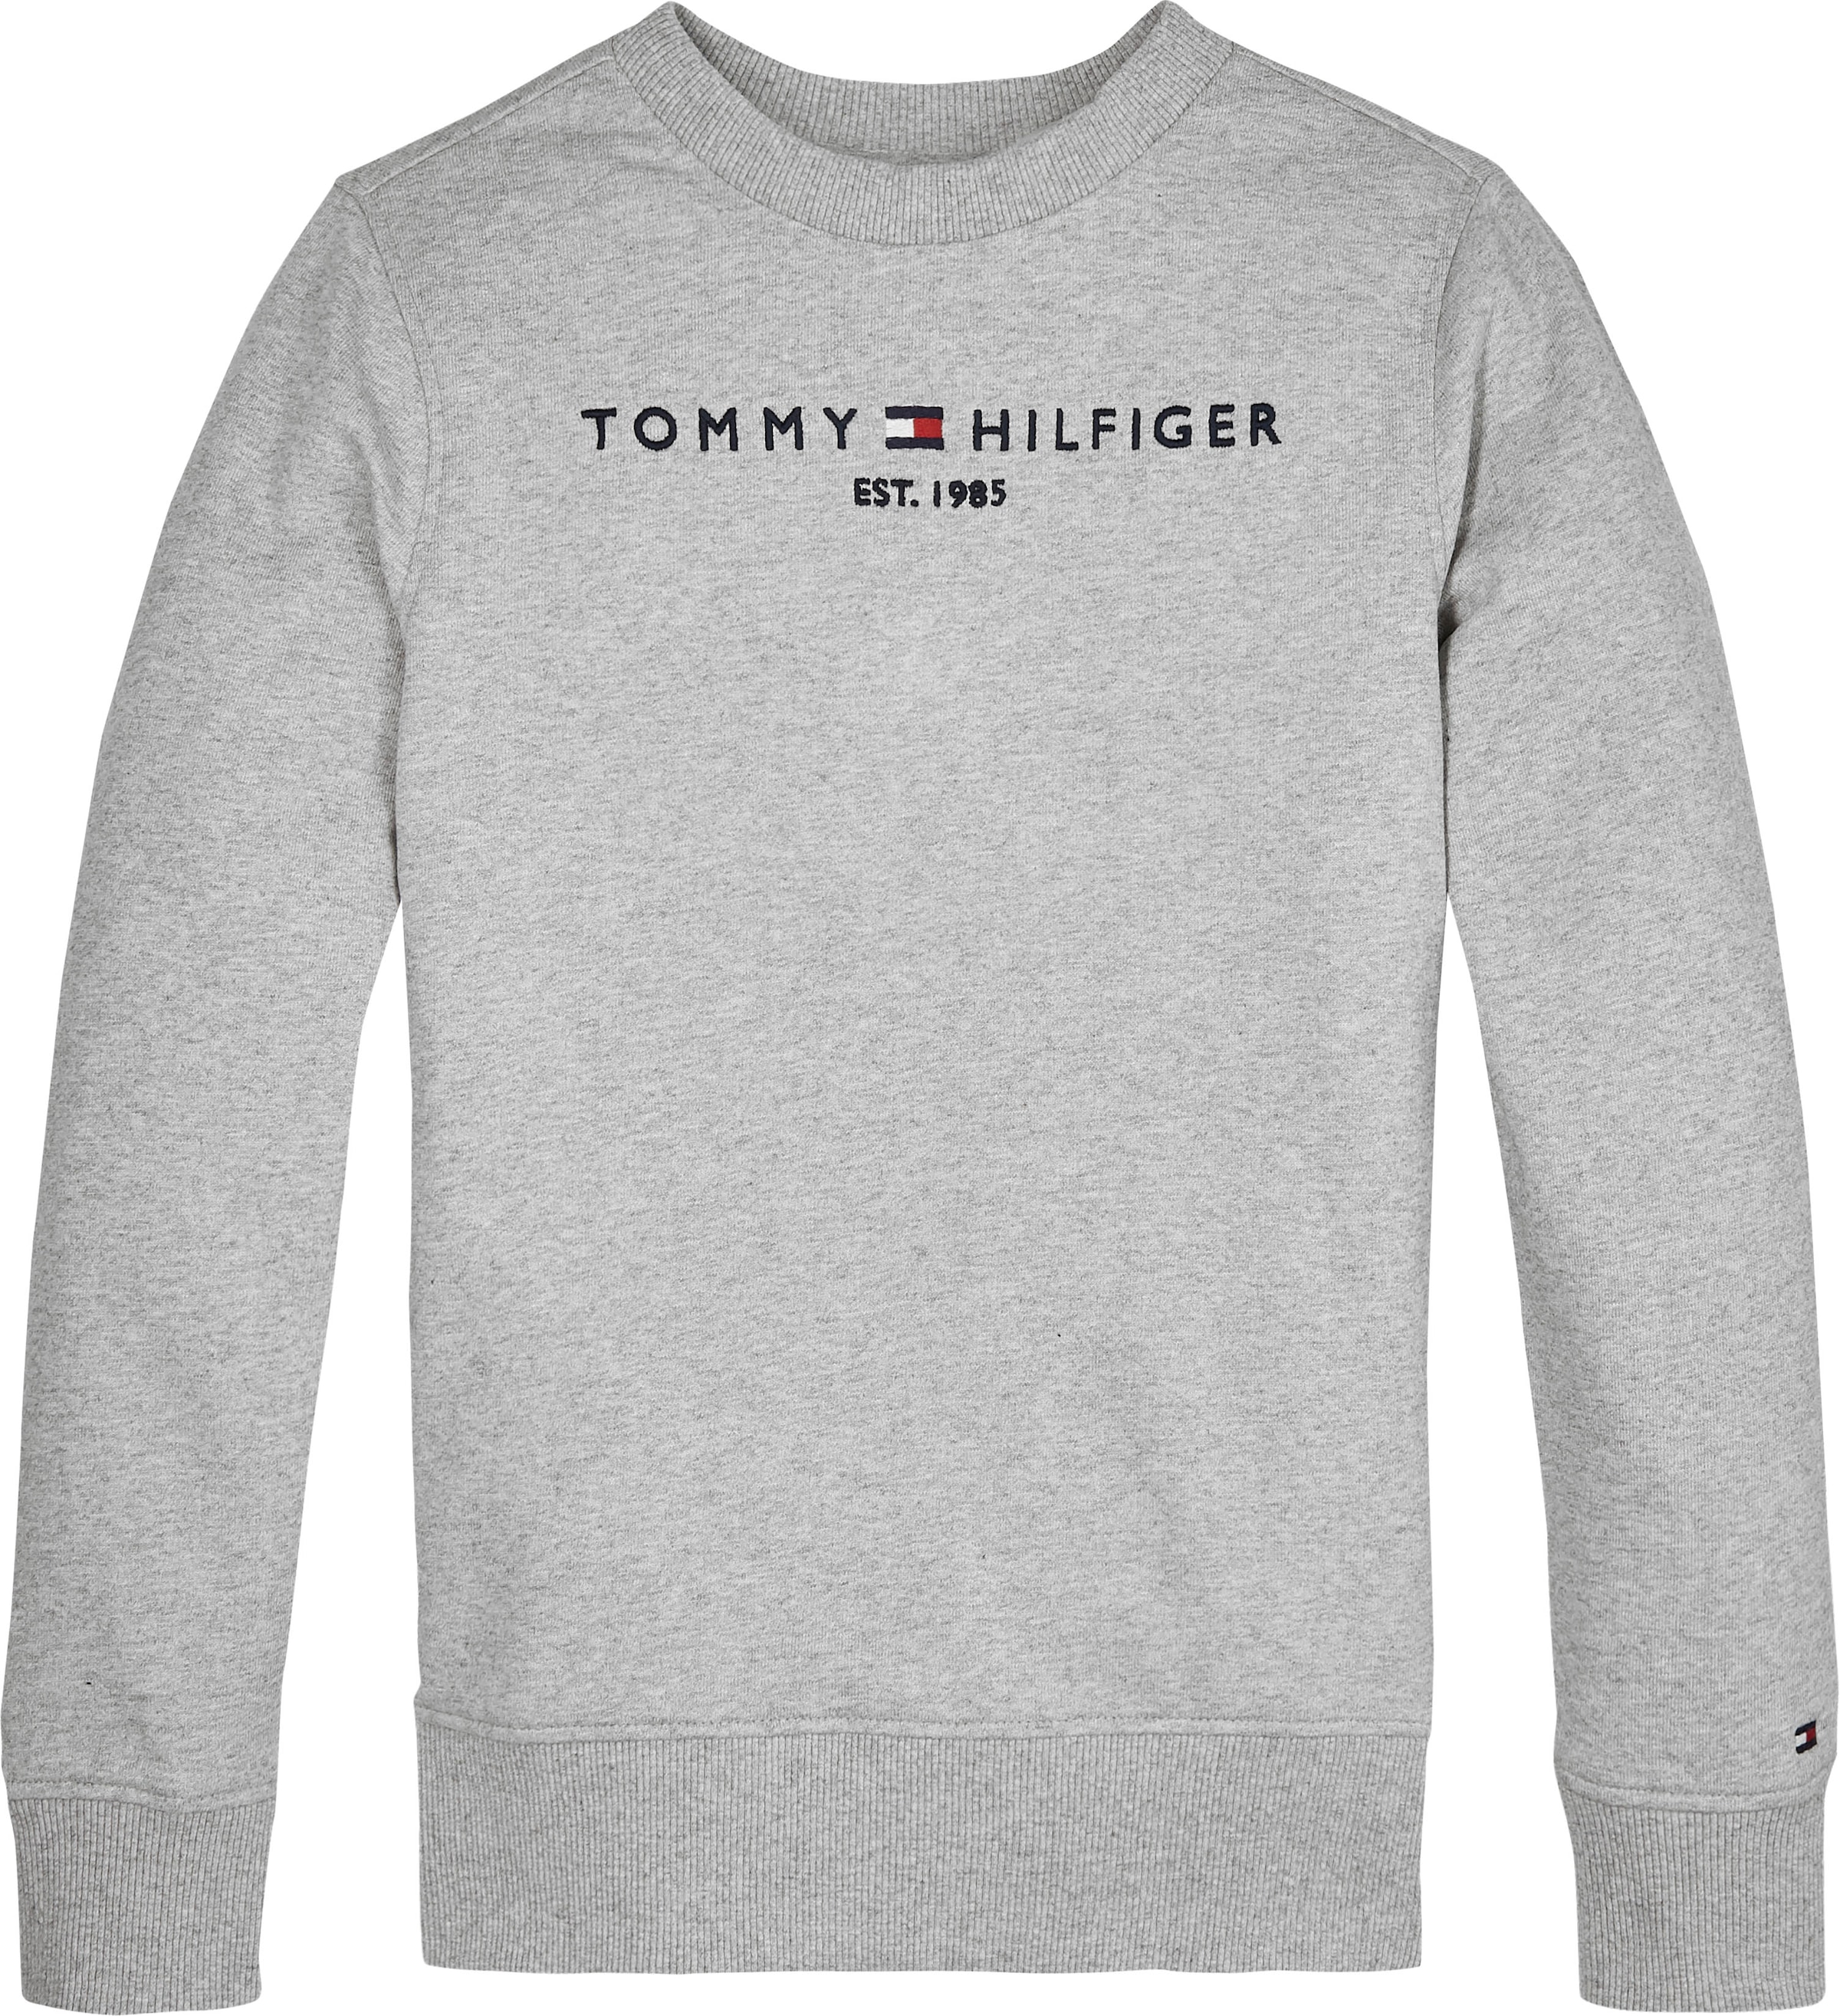 Tommy Hilfiger Sweatshirt »ESSENTIAL SWEATSHIRT«, Kinder Kids Junior  MiniMe,für Jungen und Mädchen bei OTTO